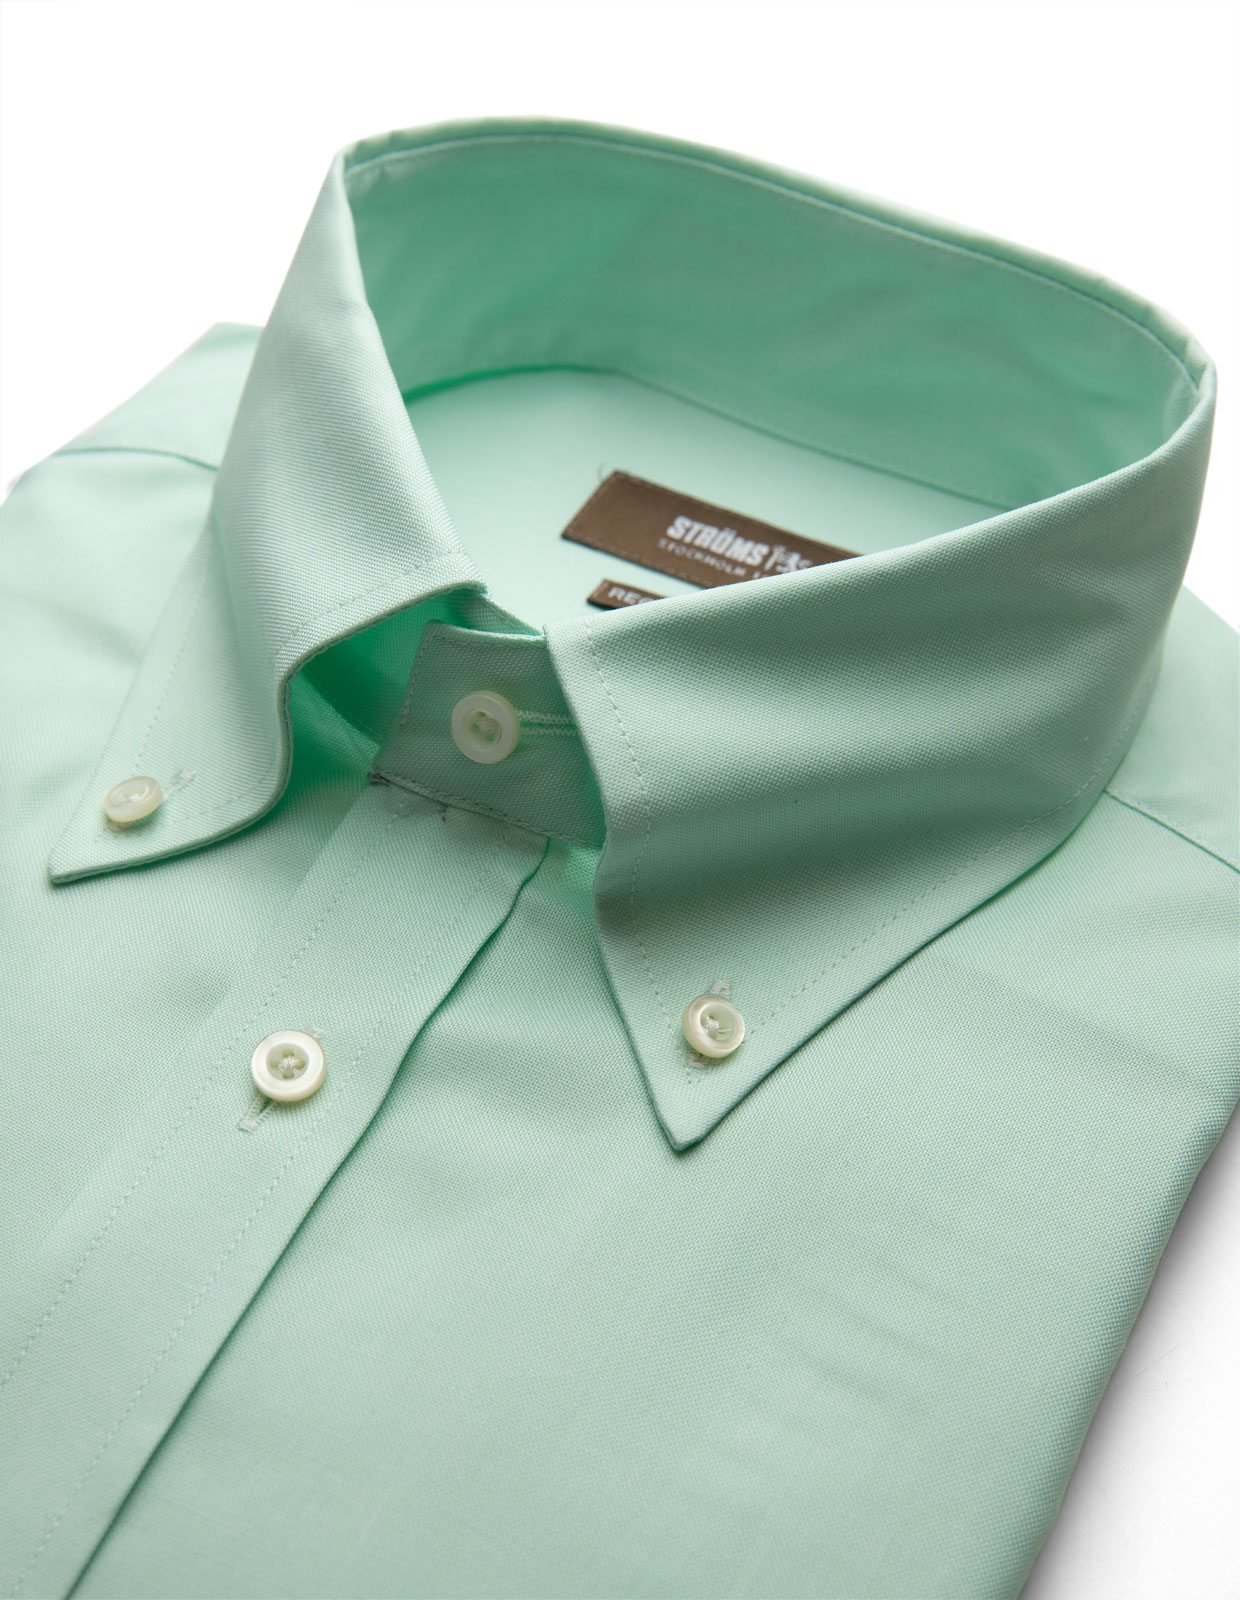 Regular Fit Oxford Skjorta Mintgrön